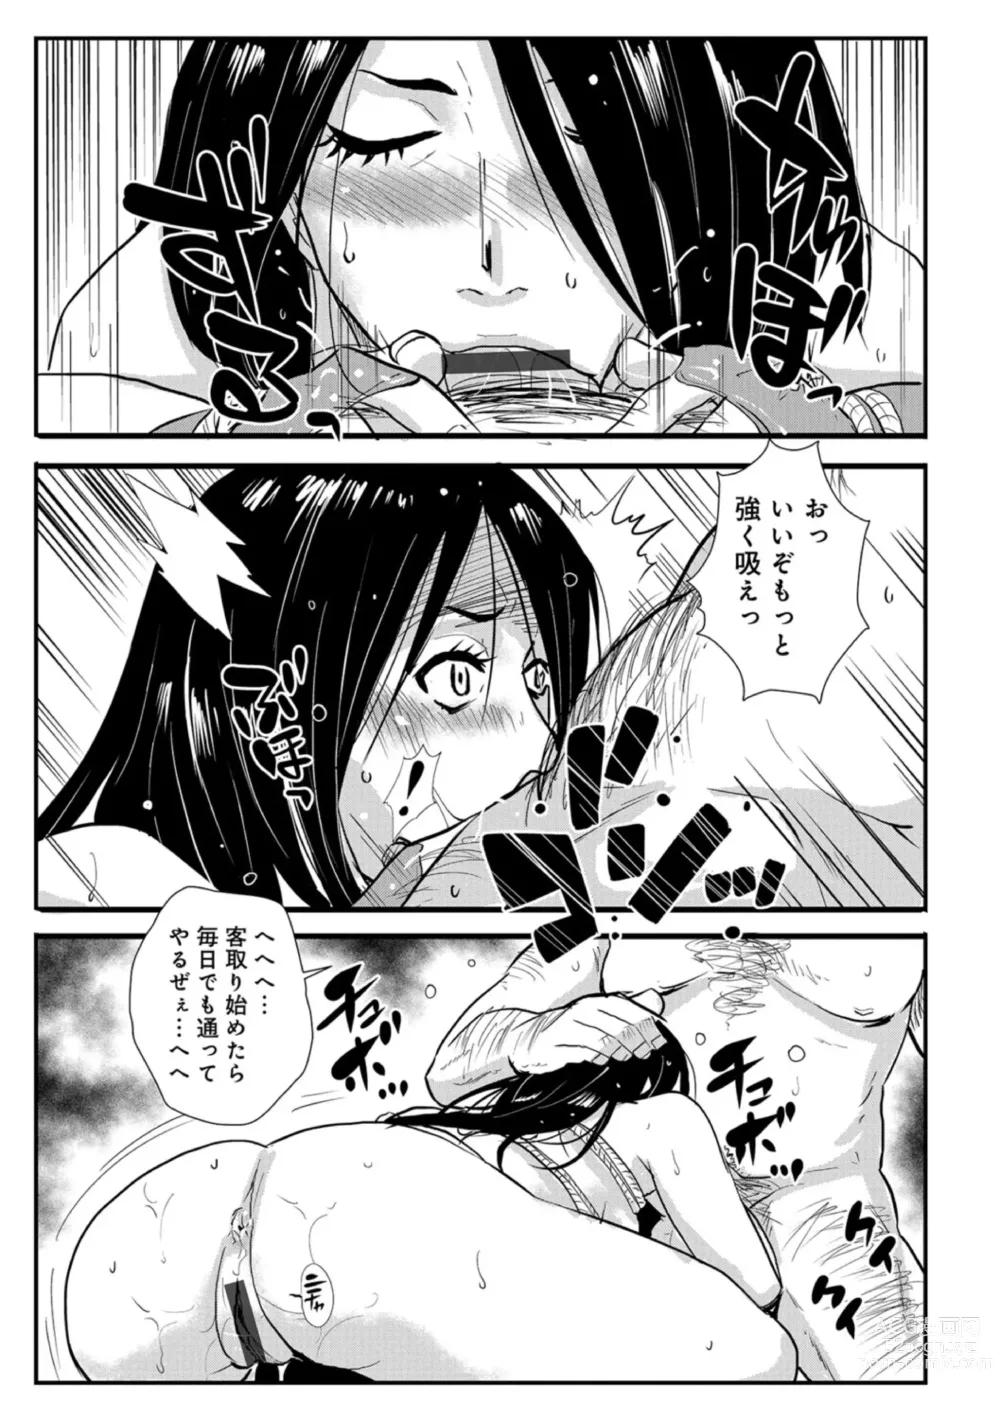 Page 5 of manga Harami samurai 04 ~Yarare Onna to Ame no Yoru~